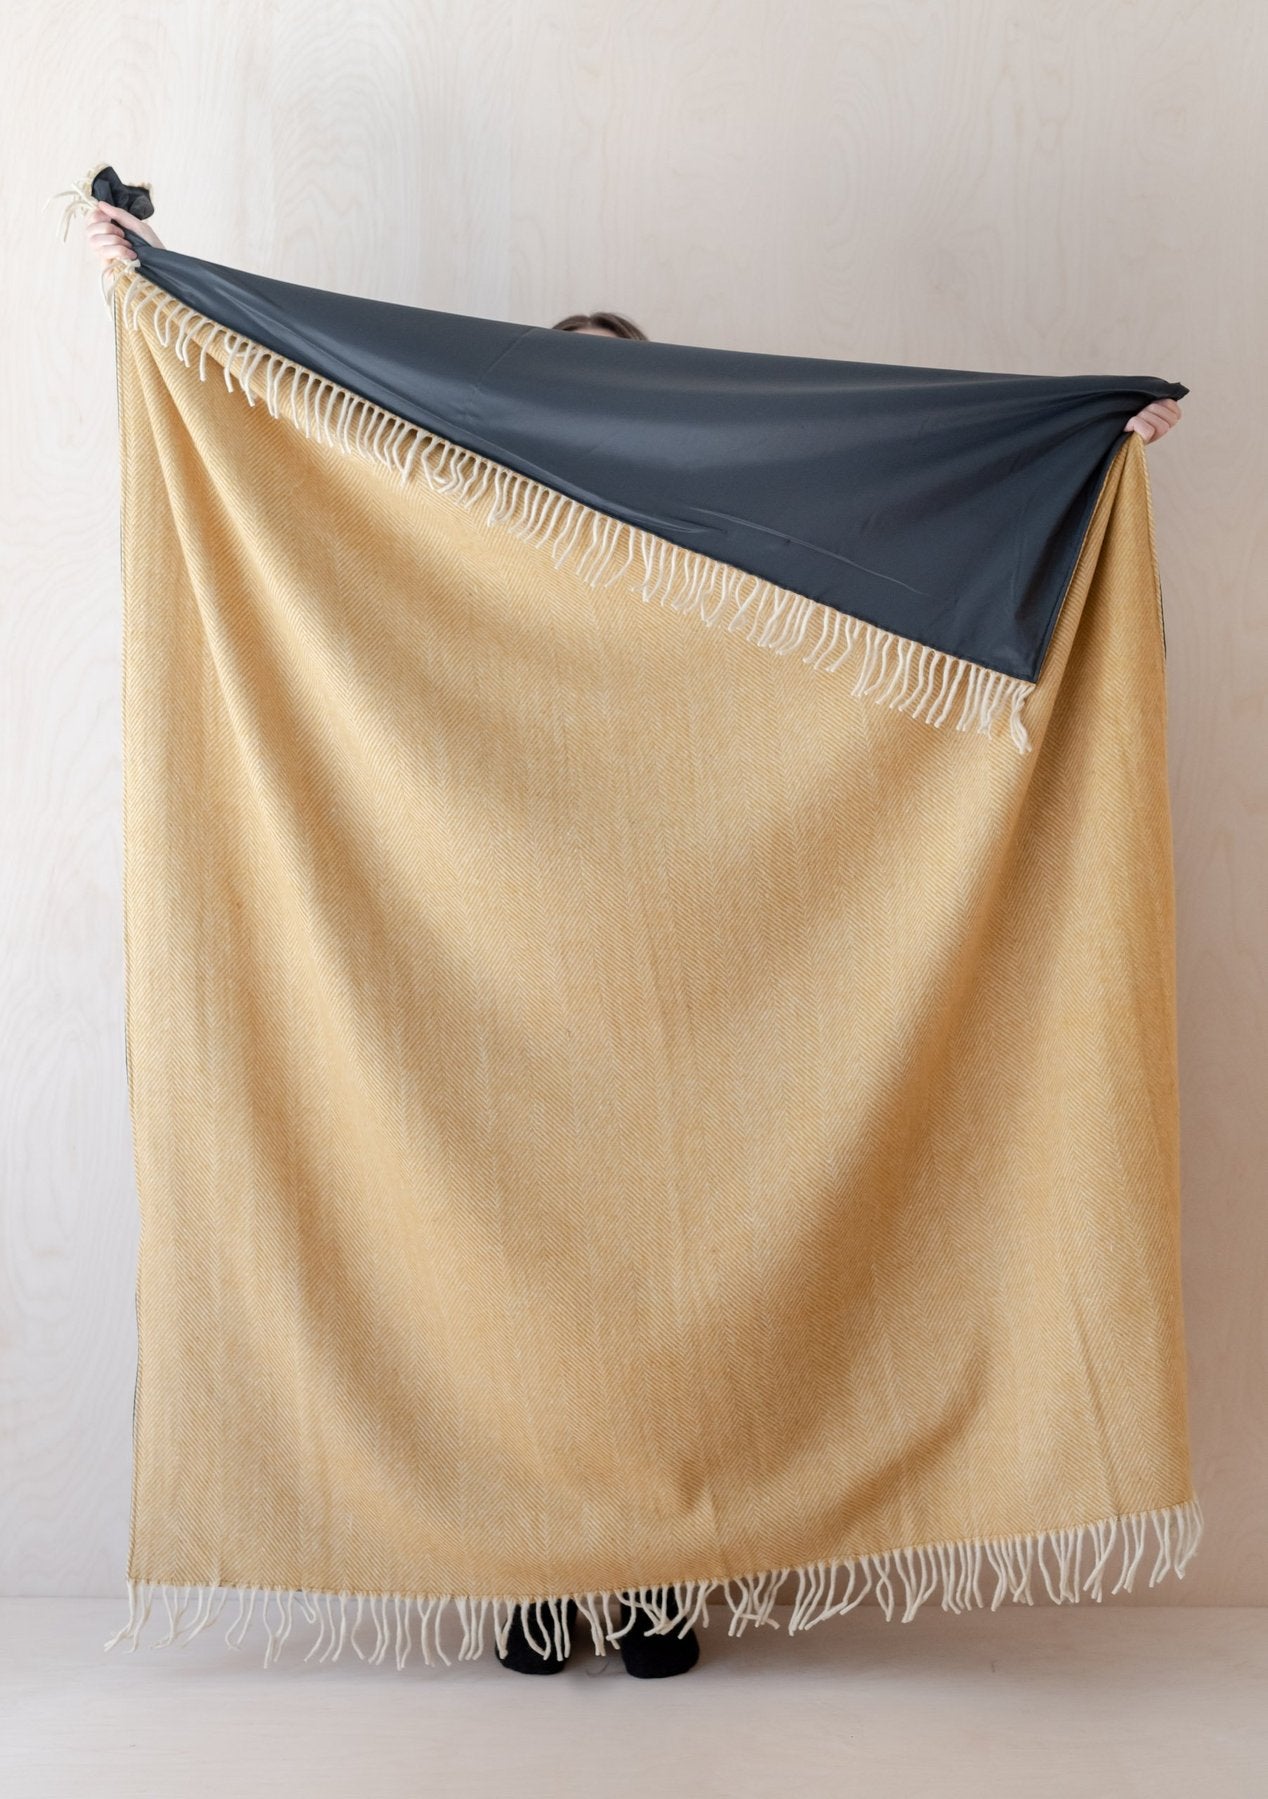 The Tartan Blanket Co. Recycled Wool Waterproof Picnic Blanket - Mustard Herringbone